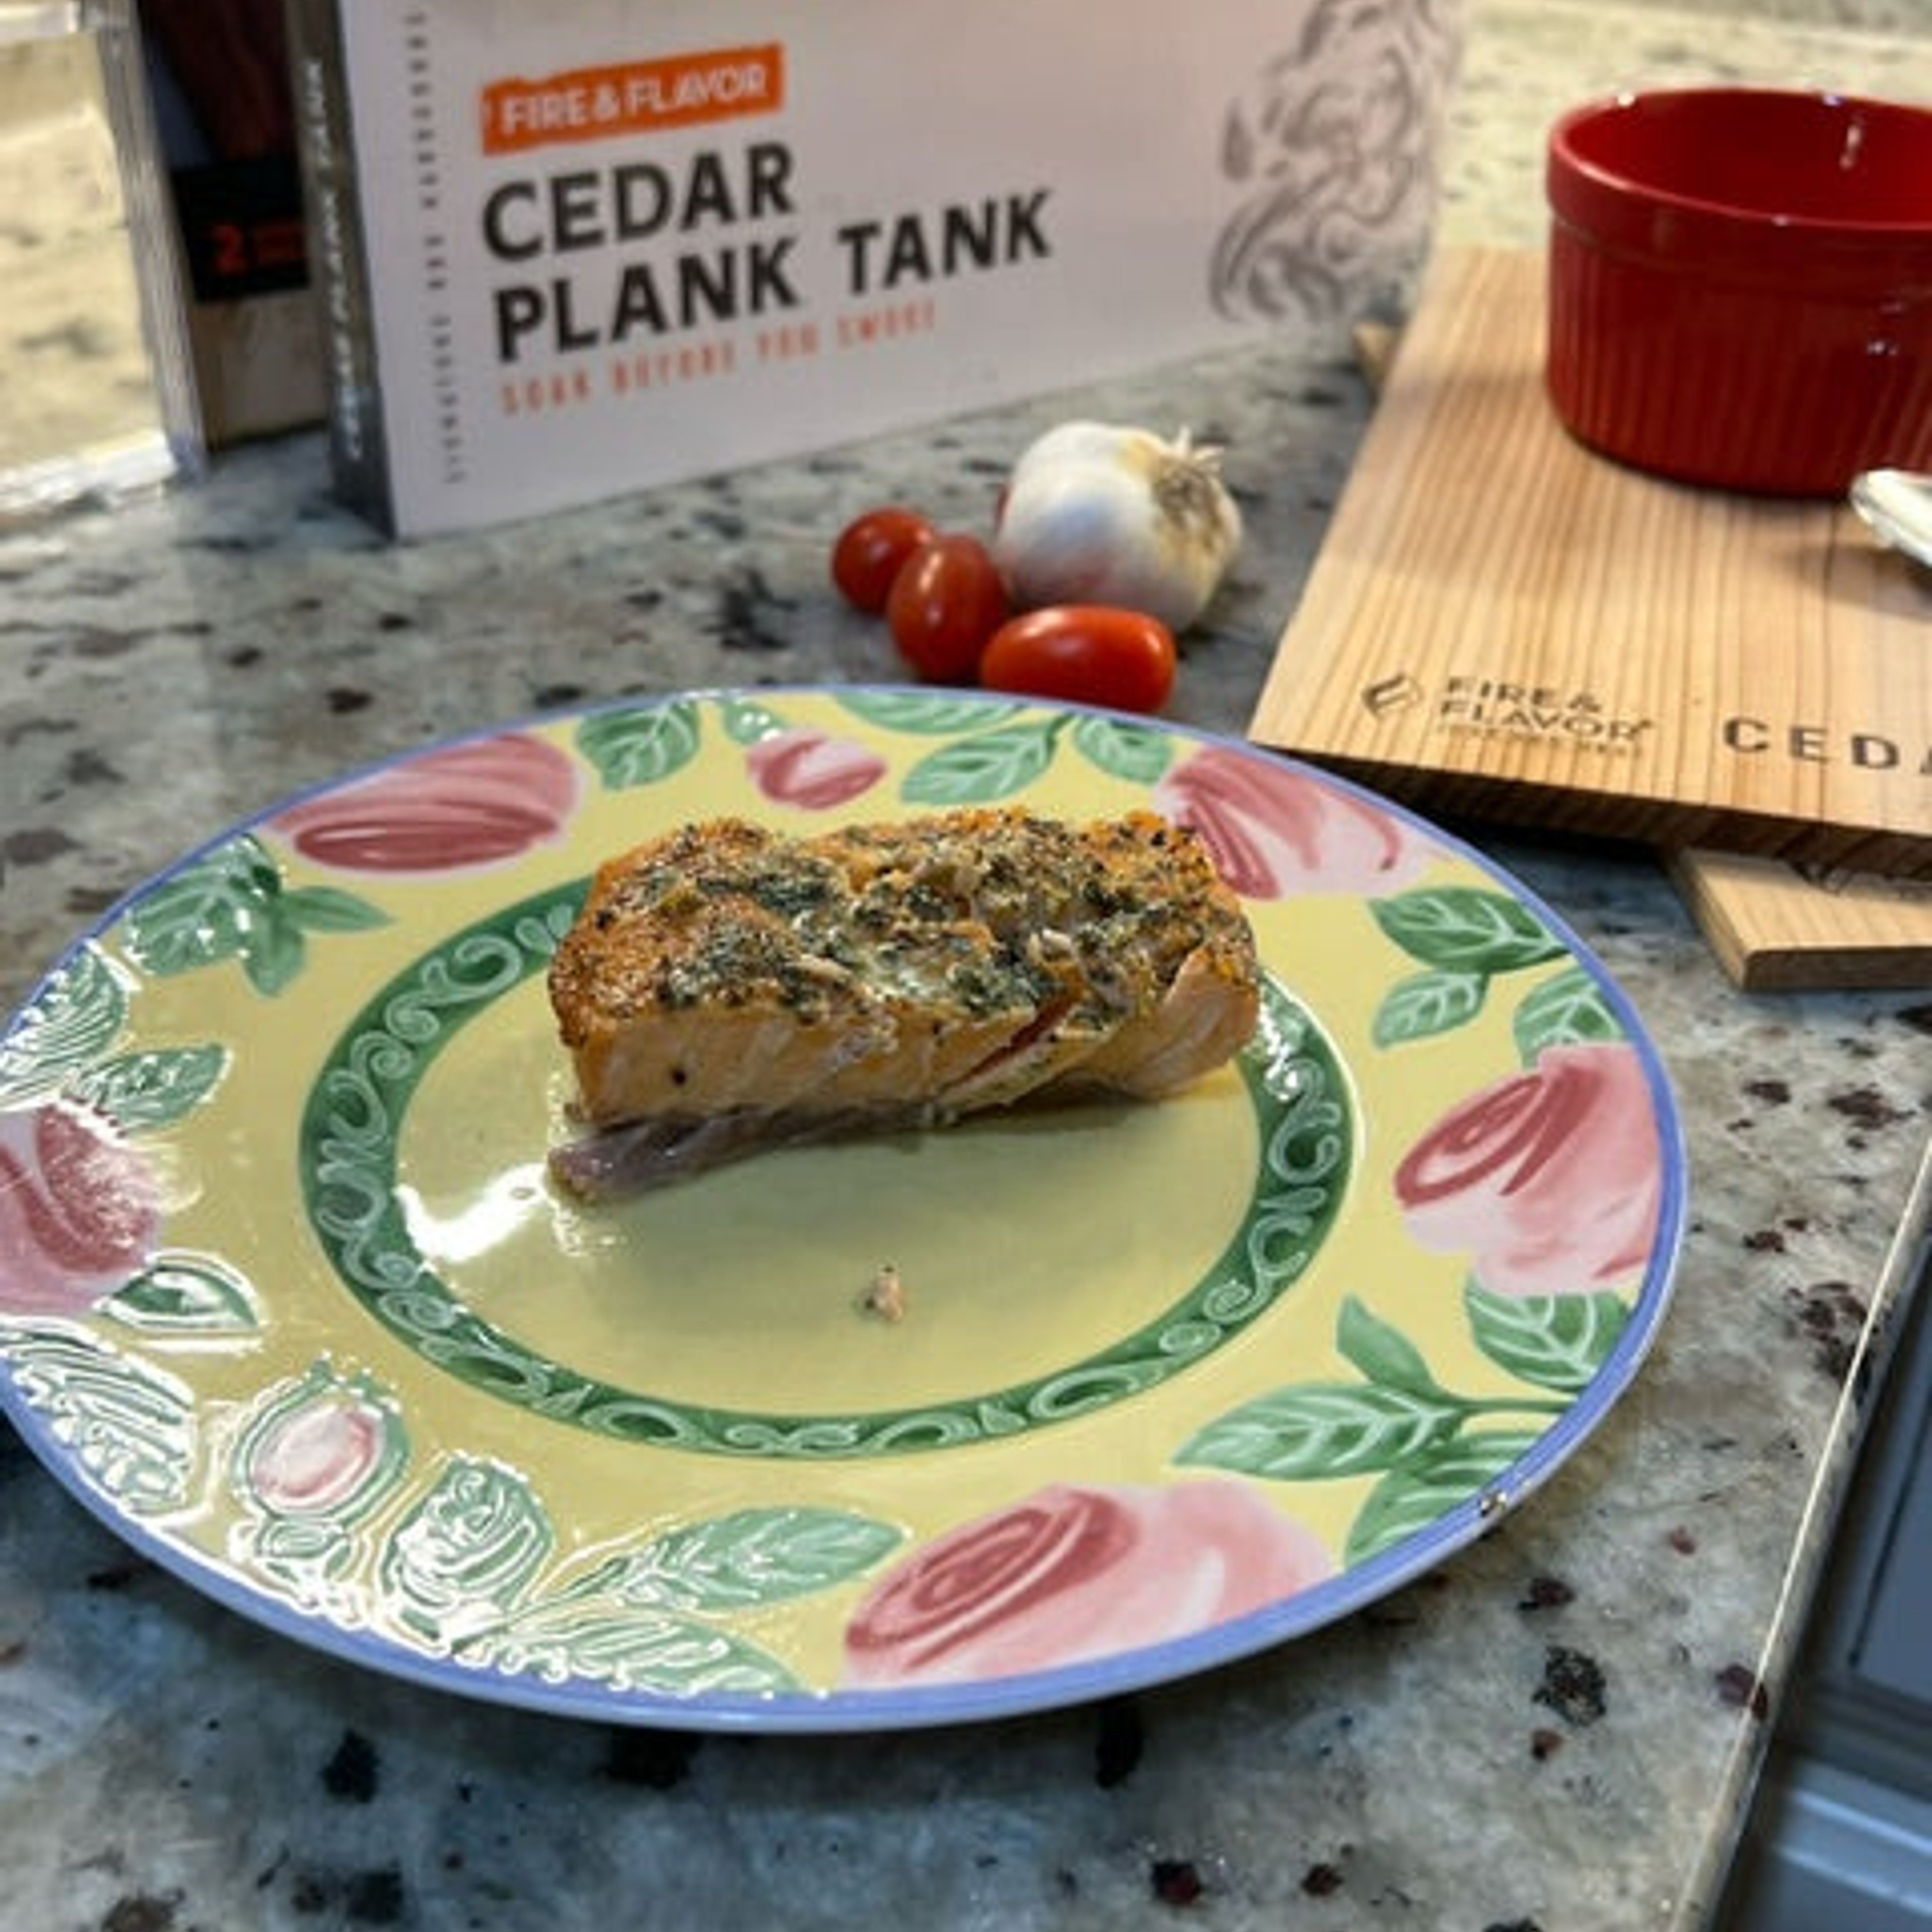 Cedar Plank Tank